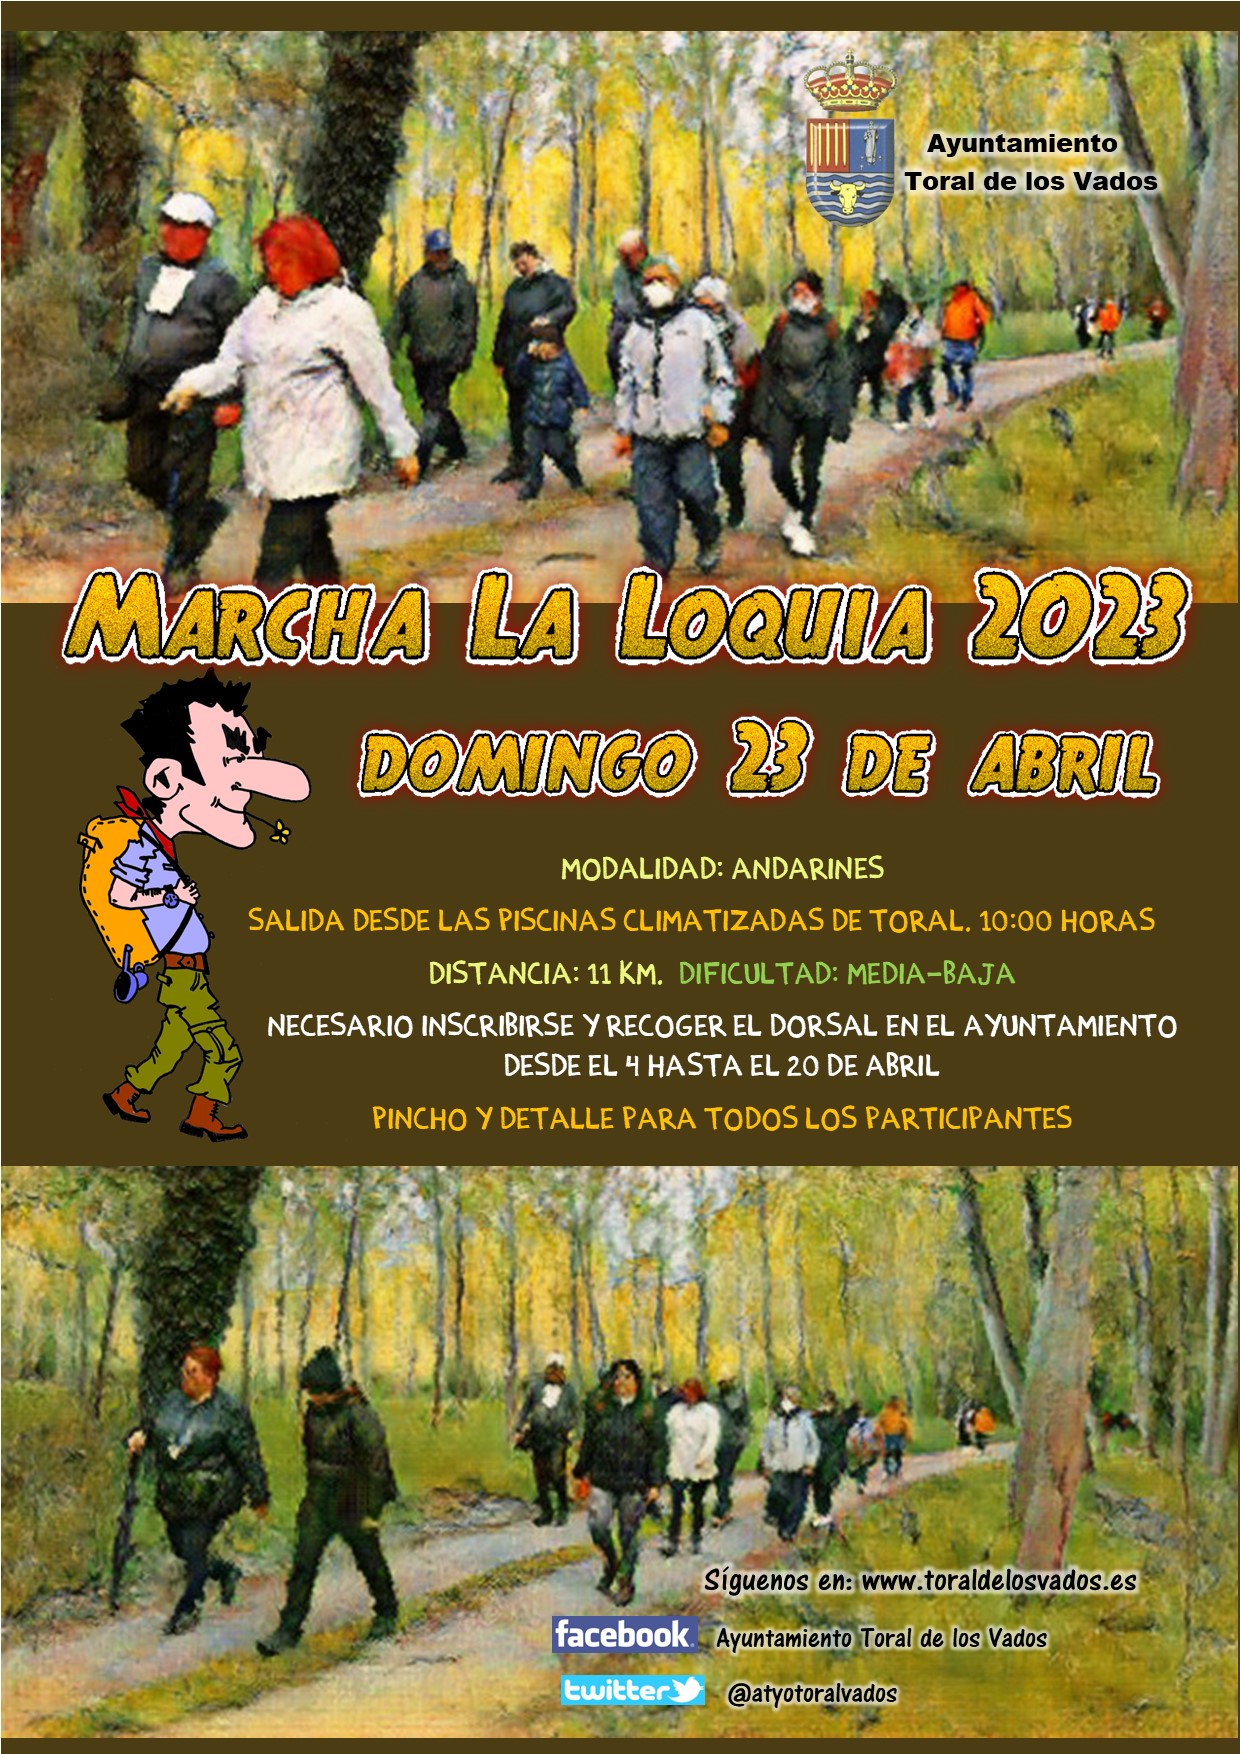 La tradicional marcha La Loquia de Toral de los Vados celebra su 16 edición 2